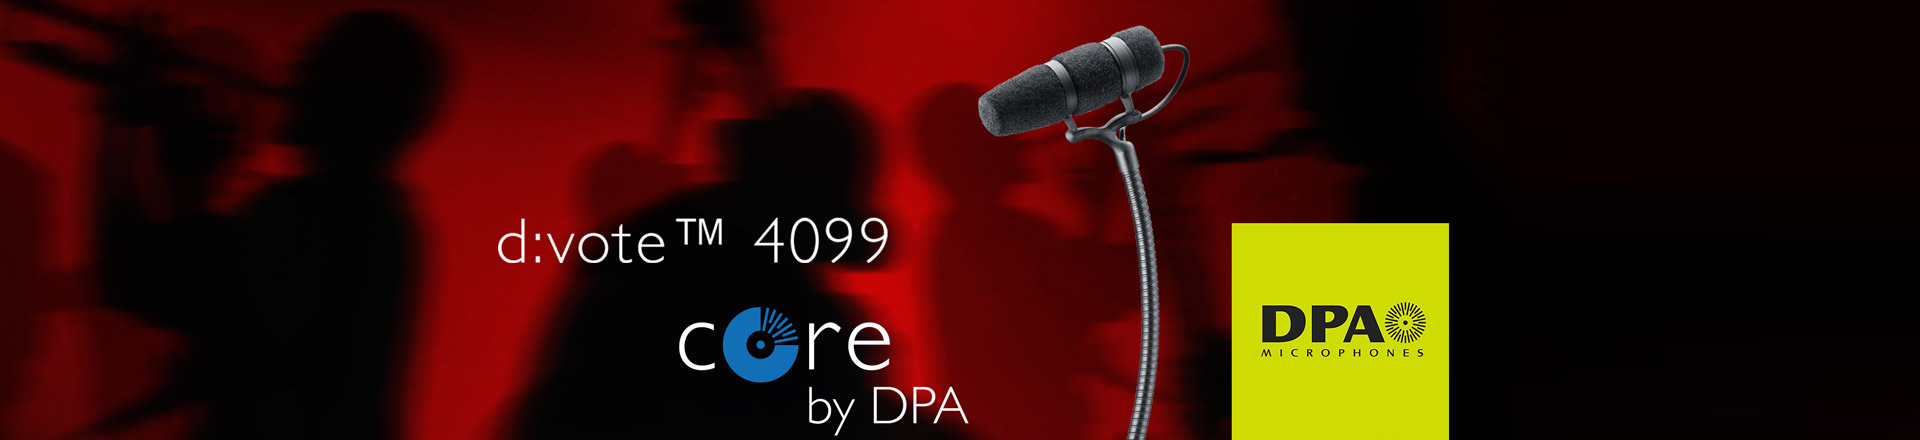 DPA: Technologia CORE już w mikrofonach d:vote 4099